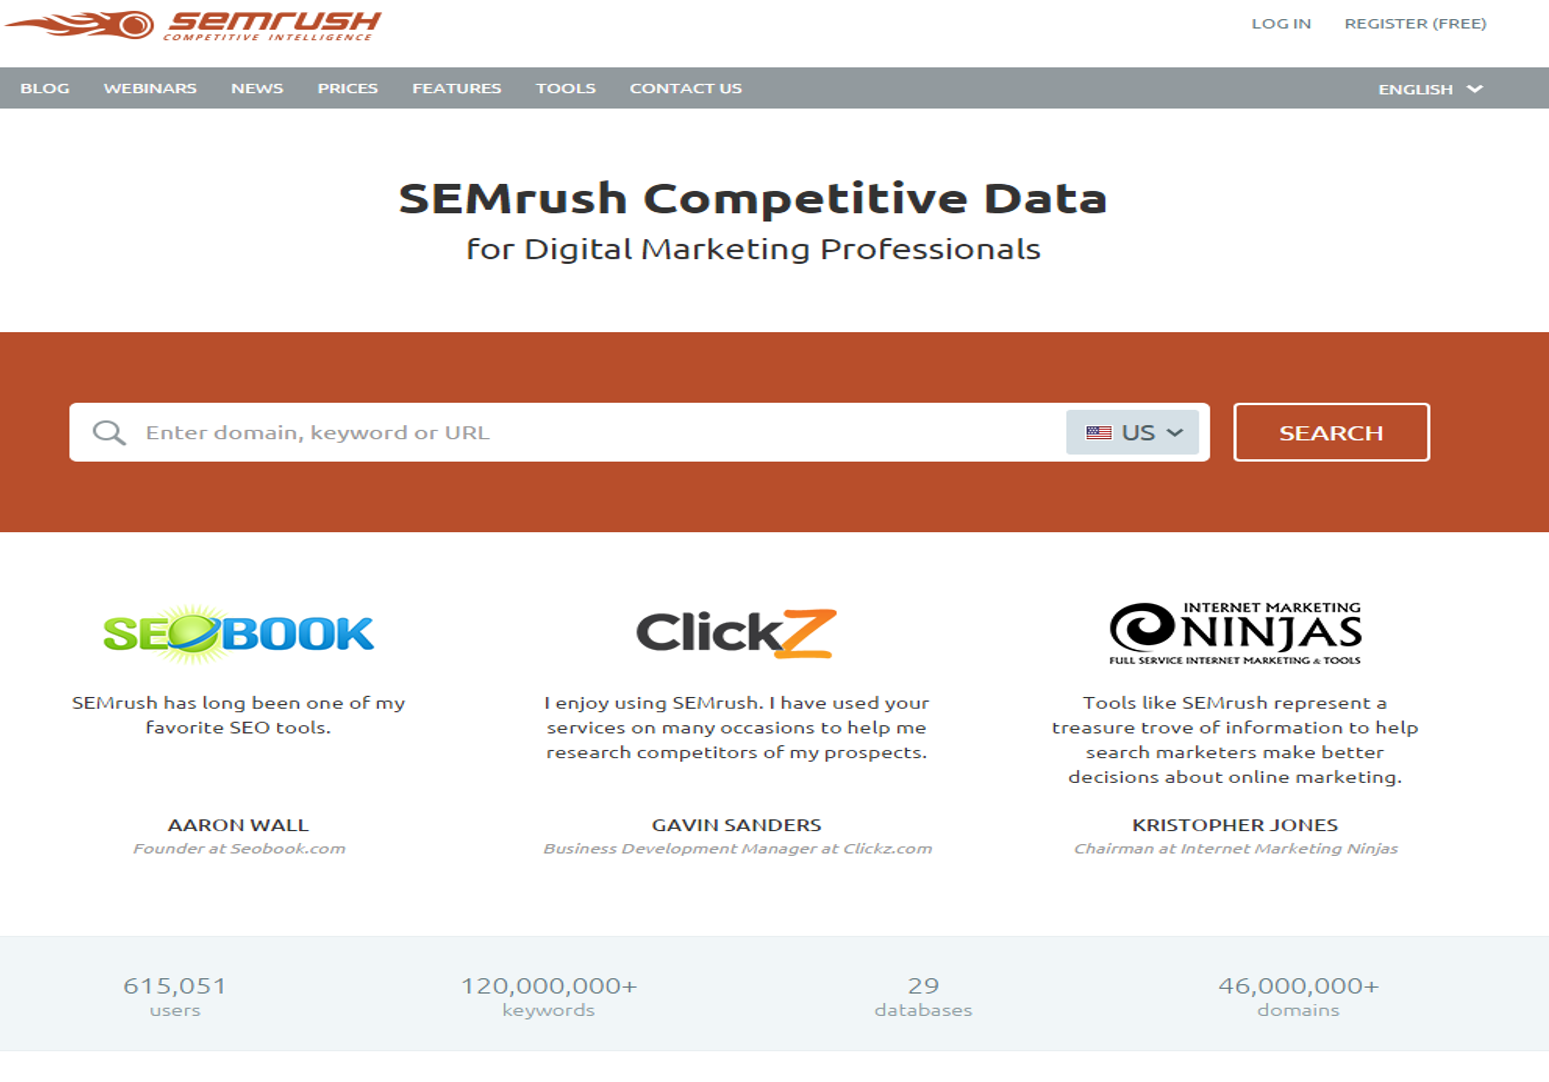  SEMrush Competitive Data site